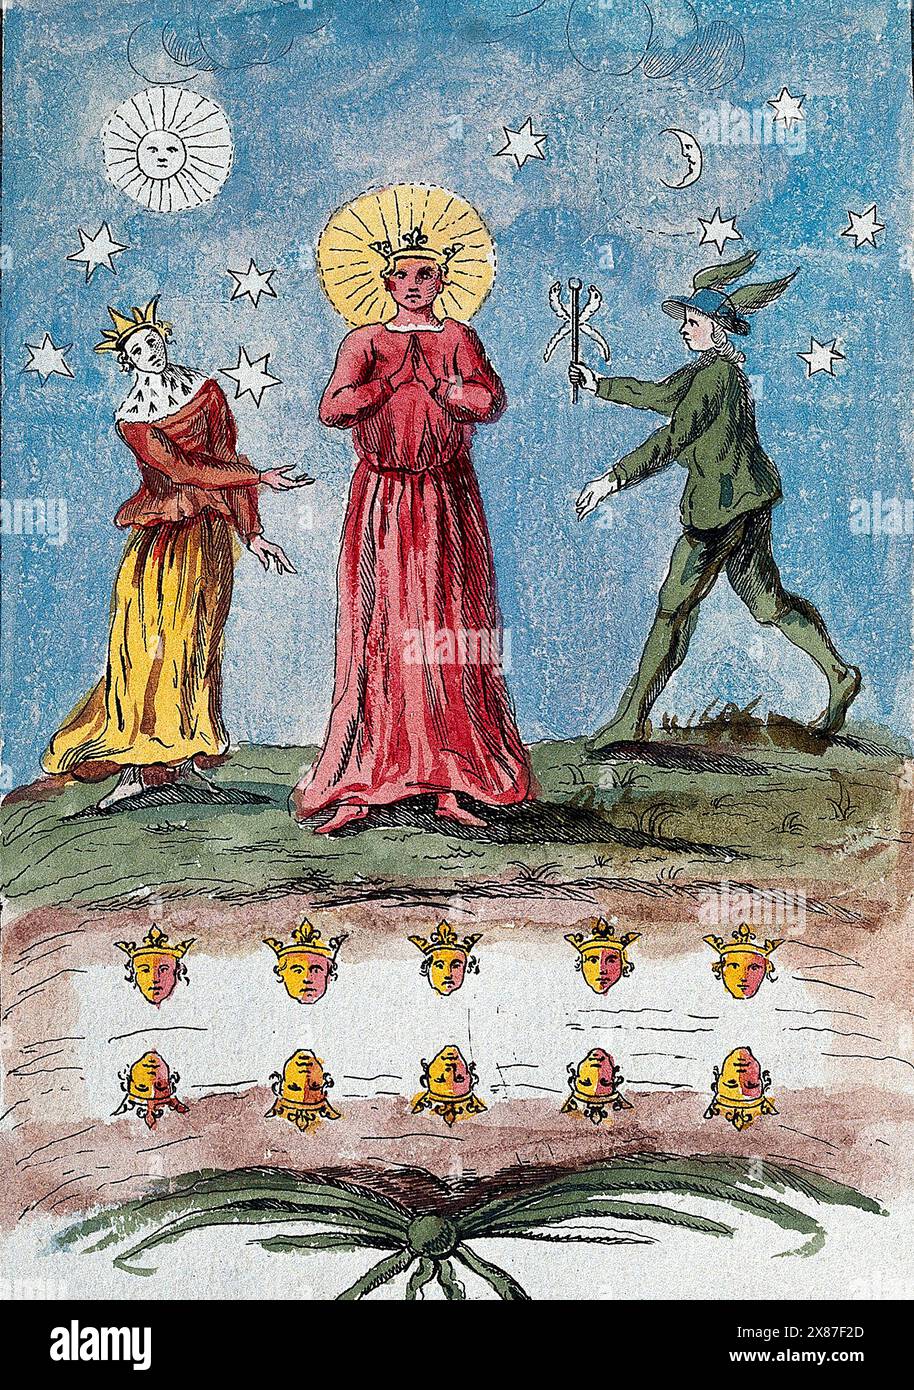 Ein König mit rotem Gesicht steht in einer roten Robe, flankiert von einer Königin und der Gottheit Merkur in grünen Kleidern; sie stellt eine Bühne im Prozess der Alchemie dar. Farbige Radierung, ca. 18. Jahrhundert. Stockfoto